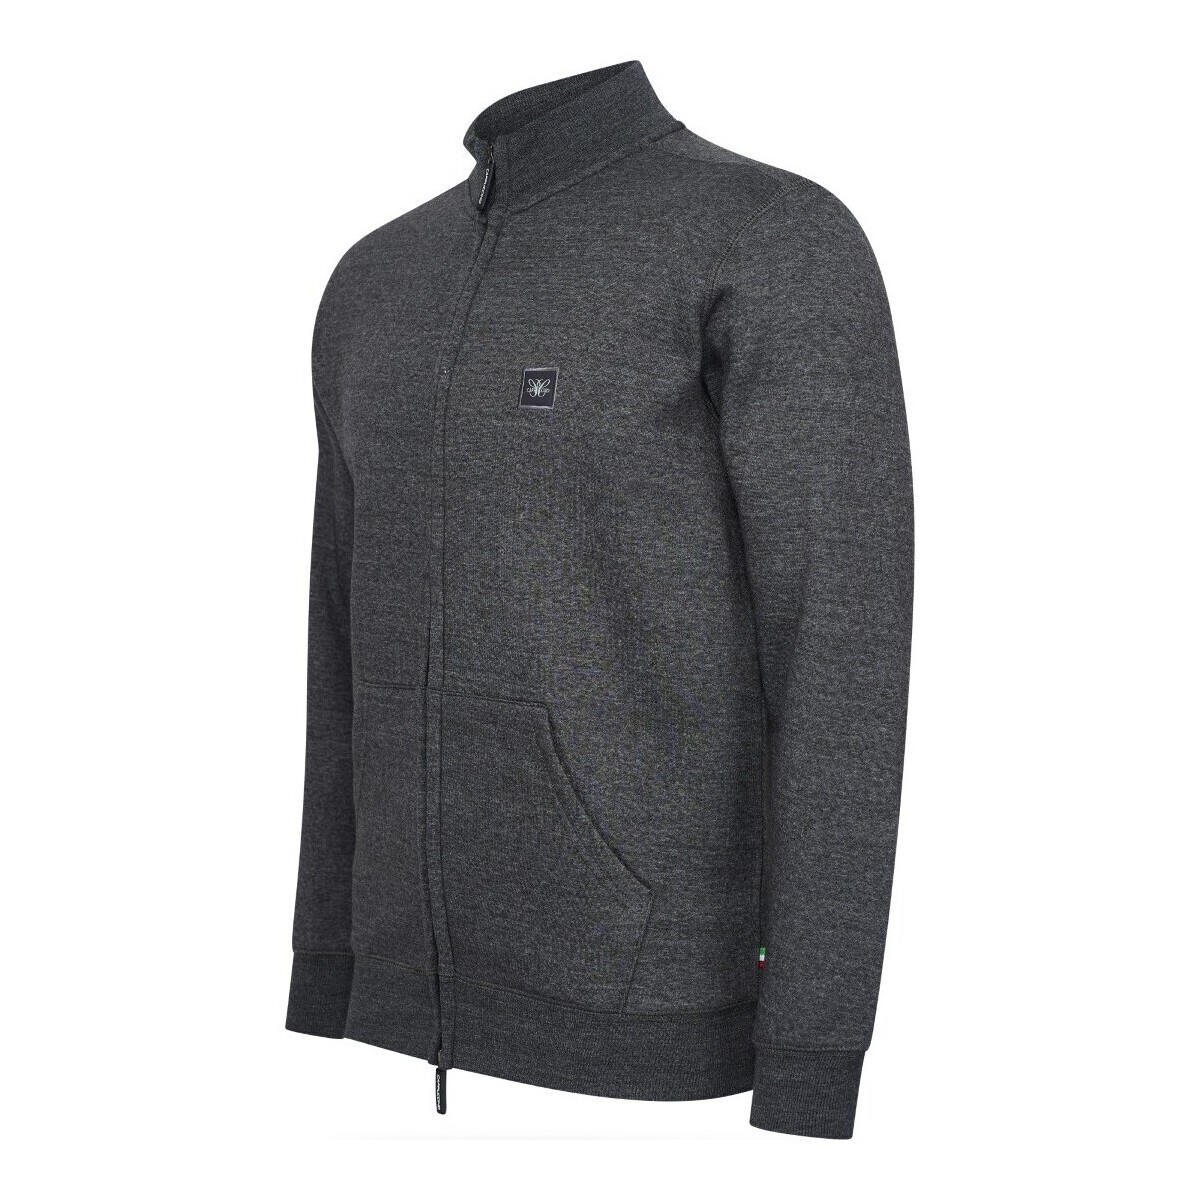 Textiel Heren Sweaters / Sweatshirts Cappuccino Italia Fleece Zip Jack Grijs